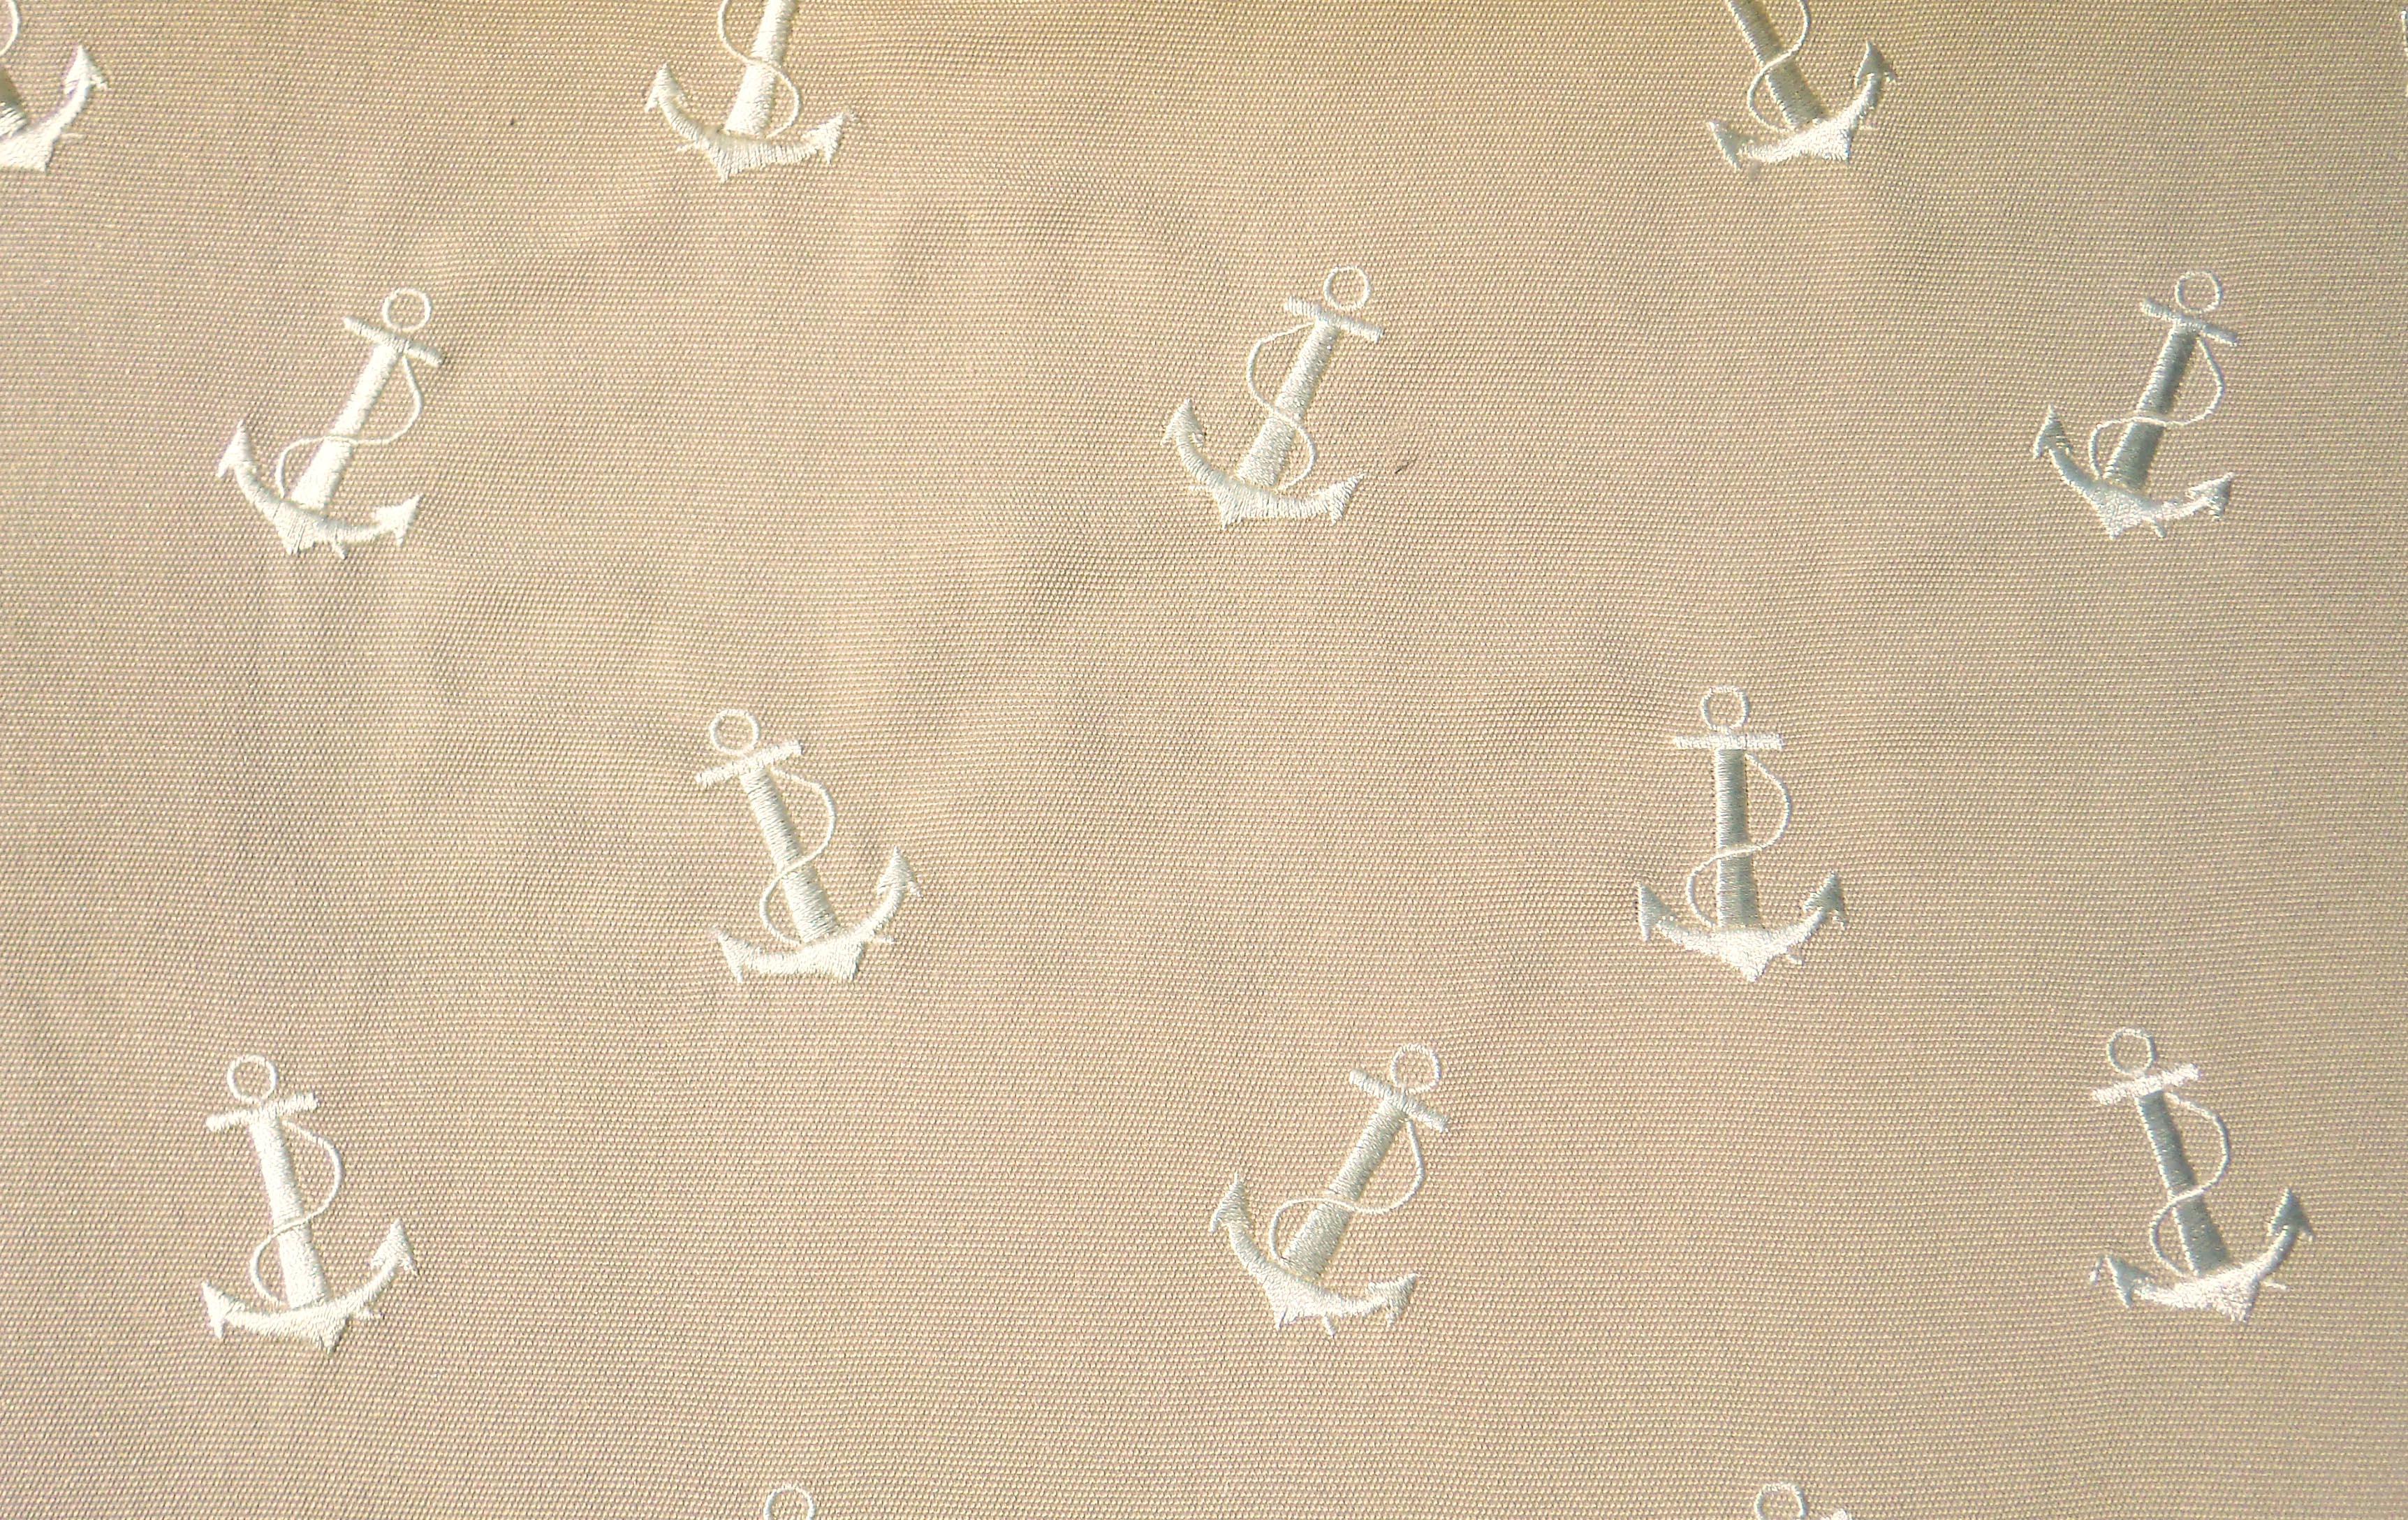 Ralph Lauren Nautical Wallpaper Upper Deck